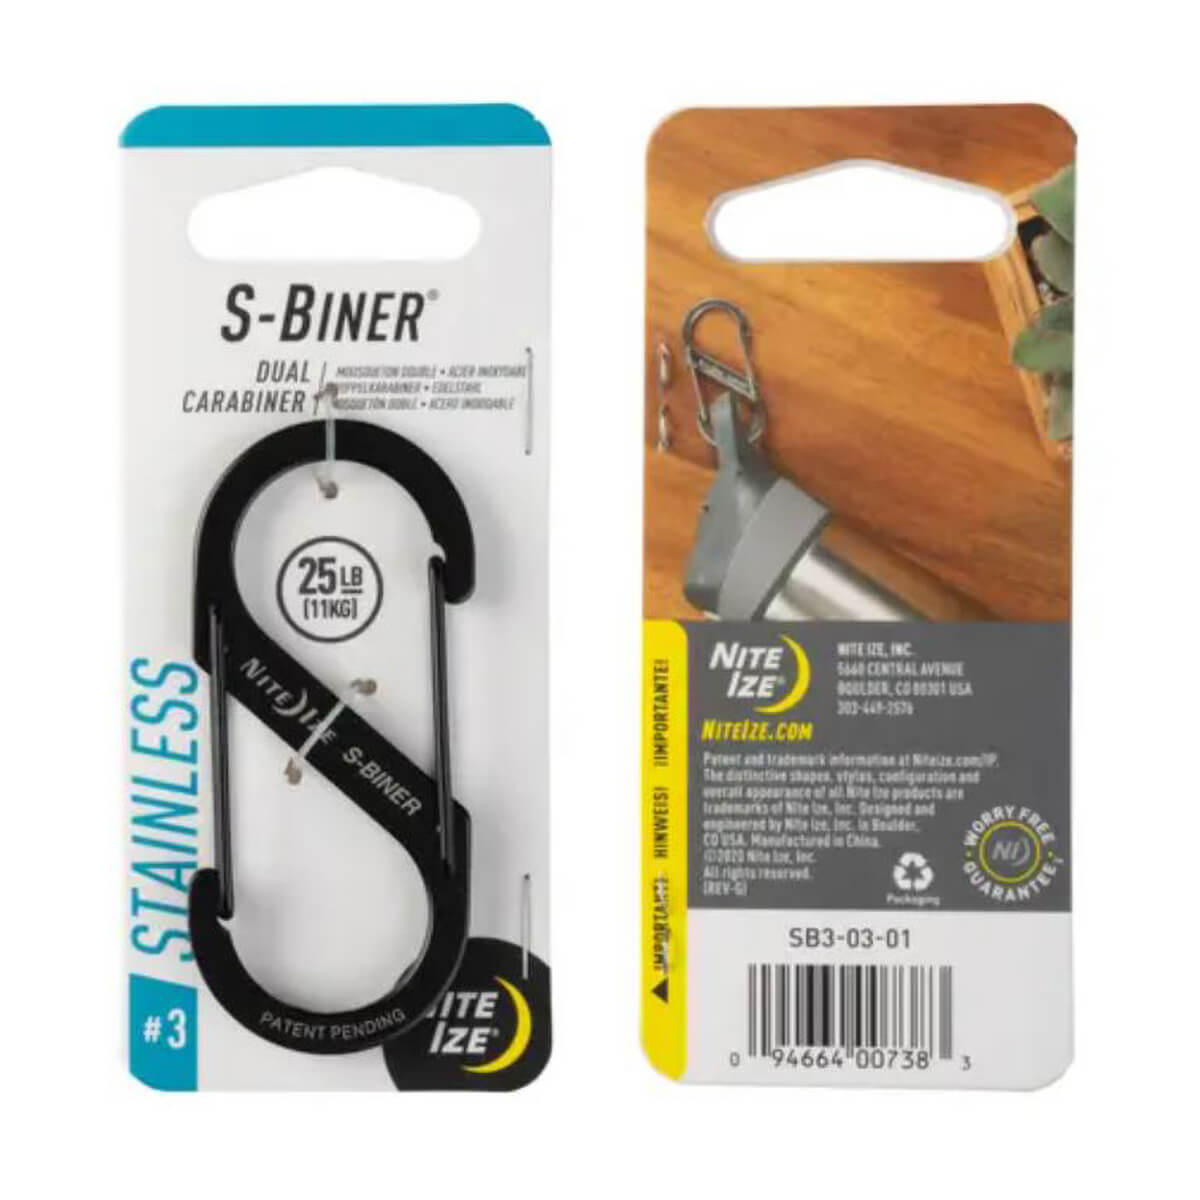 S-Biner® Stainless Steel Dual Carabiner #3 - Black